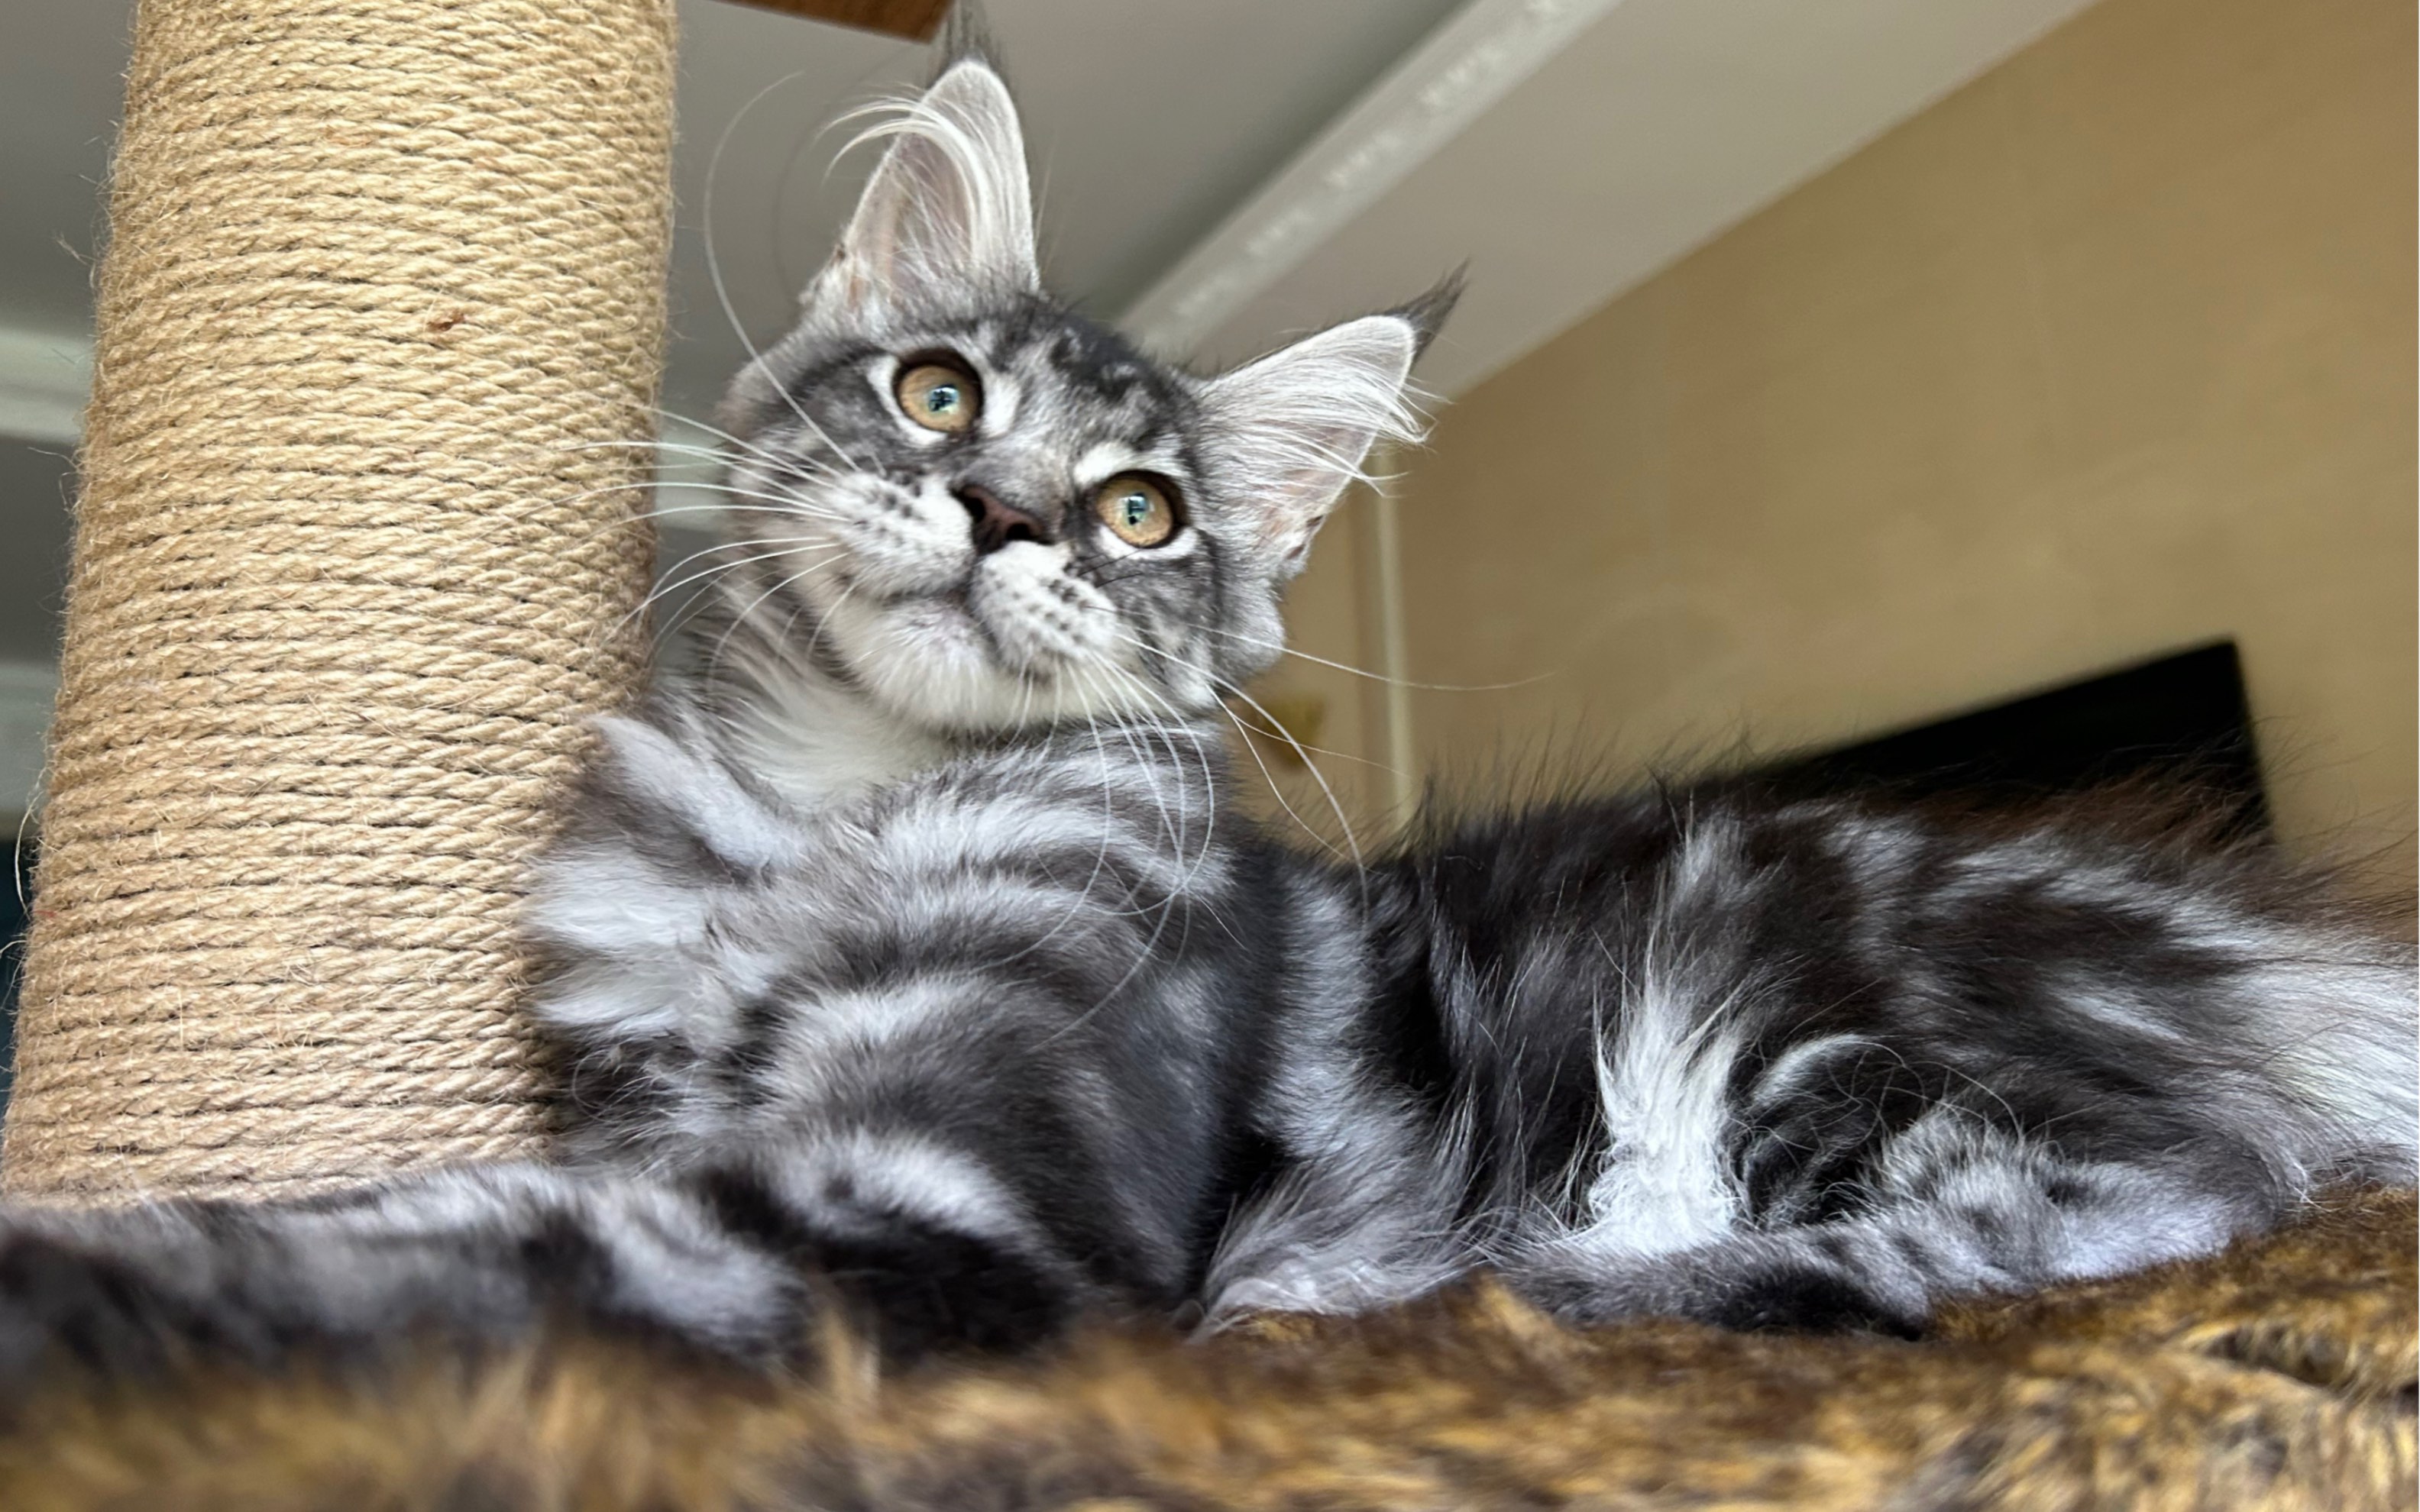 非常帅的缅因猫银虎斑妹妹,大理石纹路,这样子缅因猫你喜欢嘛